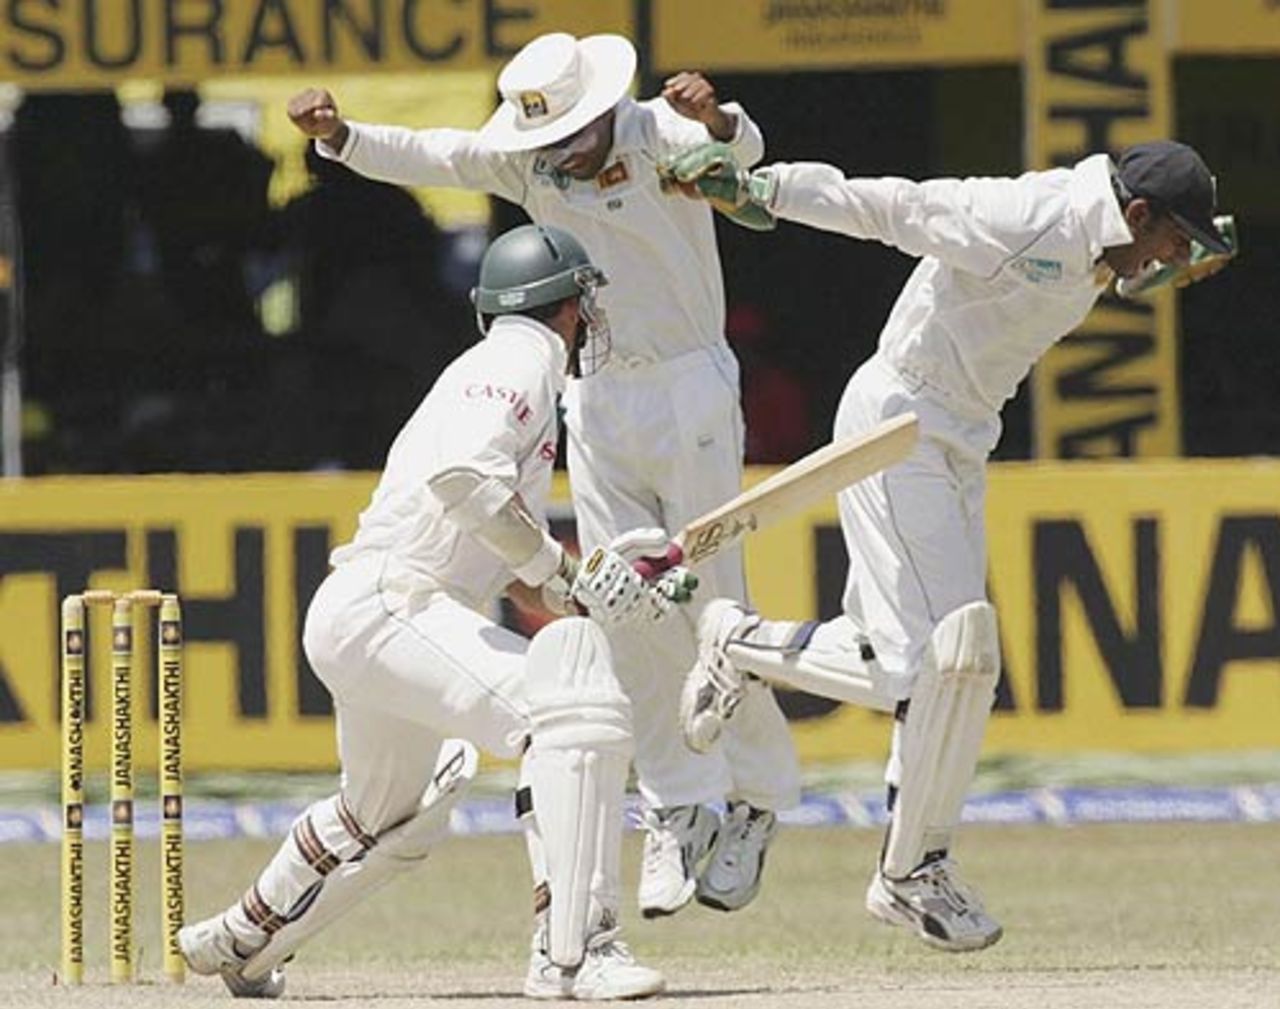 The Sri Lankans celebrate Nicky Boje's wicket, Sri Lanka v South Africa, 2nd Test, Colombo, 4th day, August 7, 2006